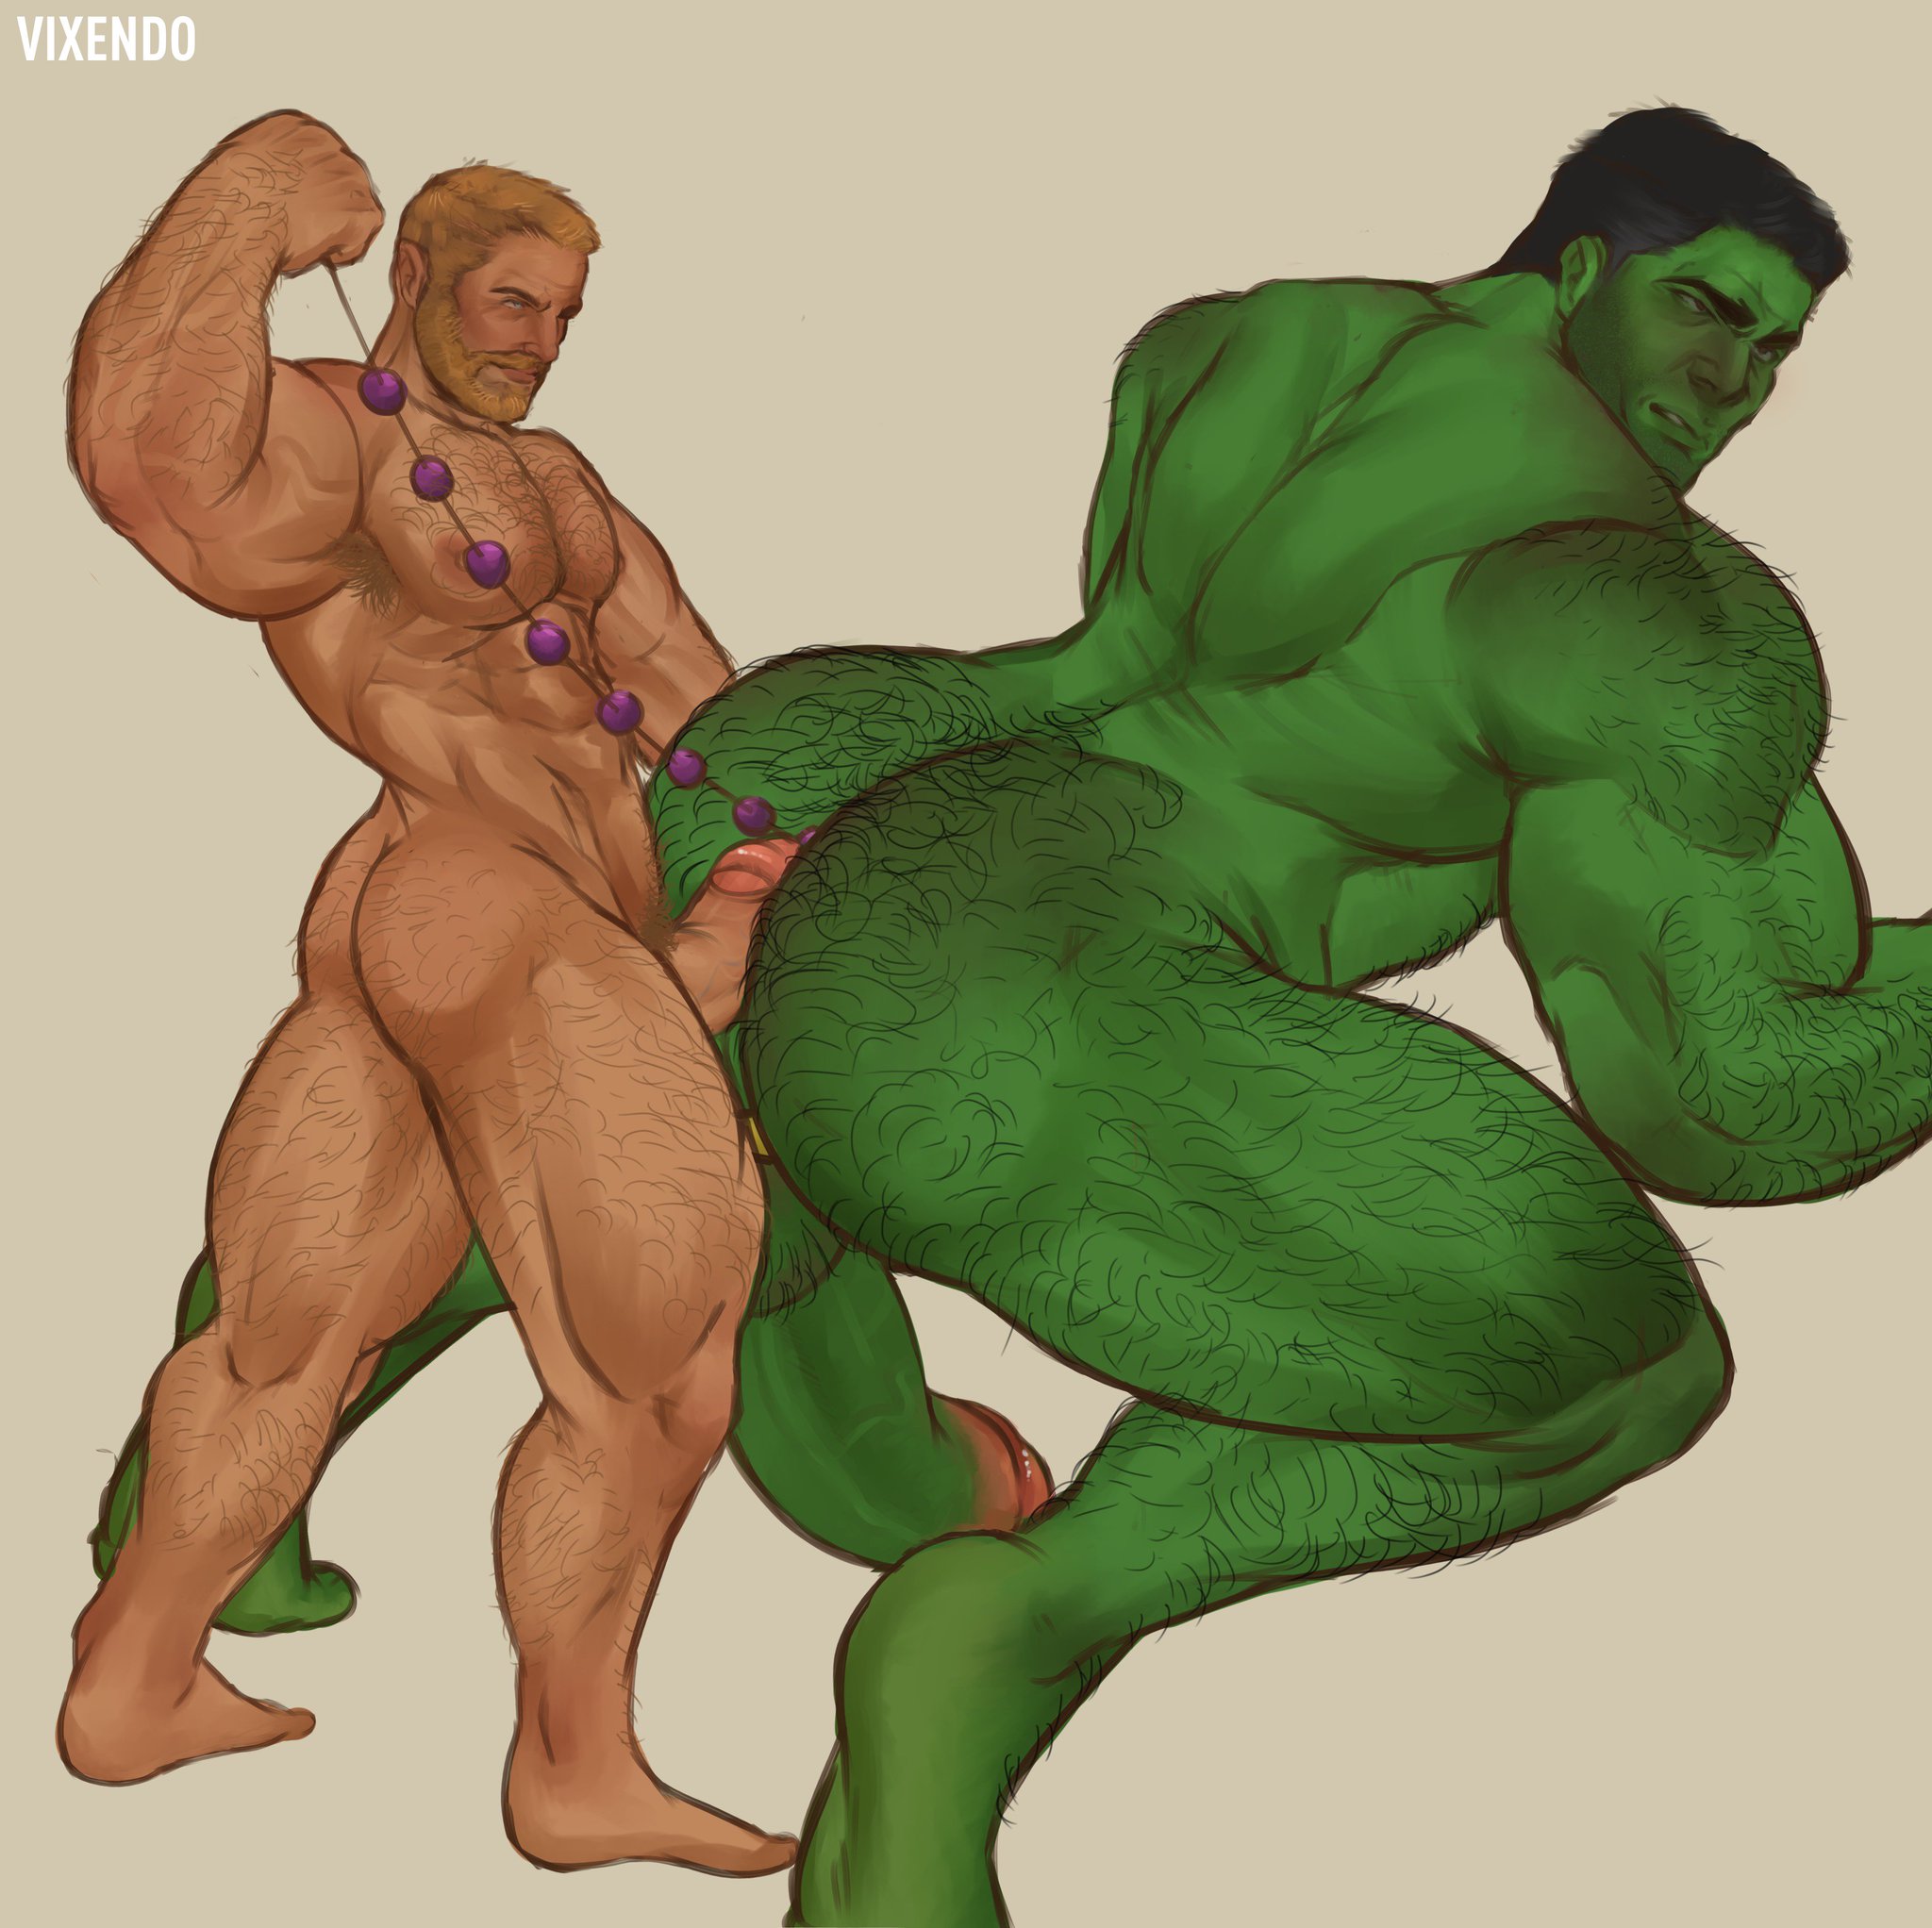 “Thor and Hulk! 